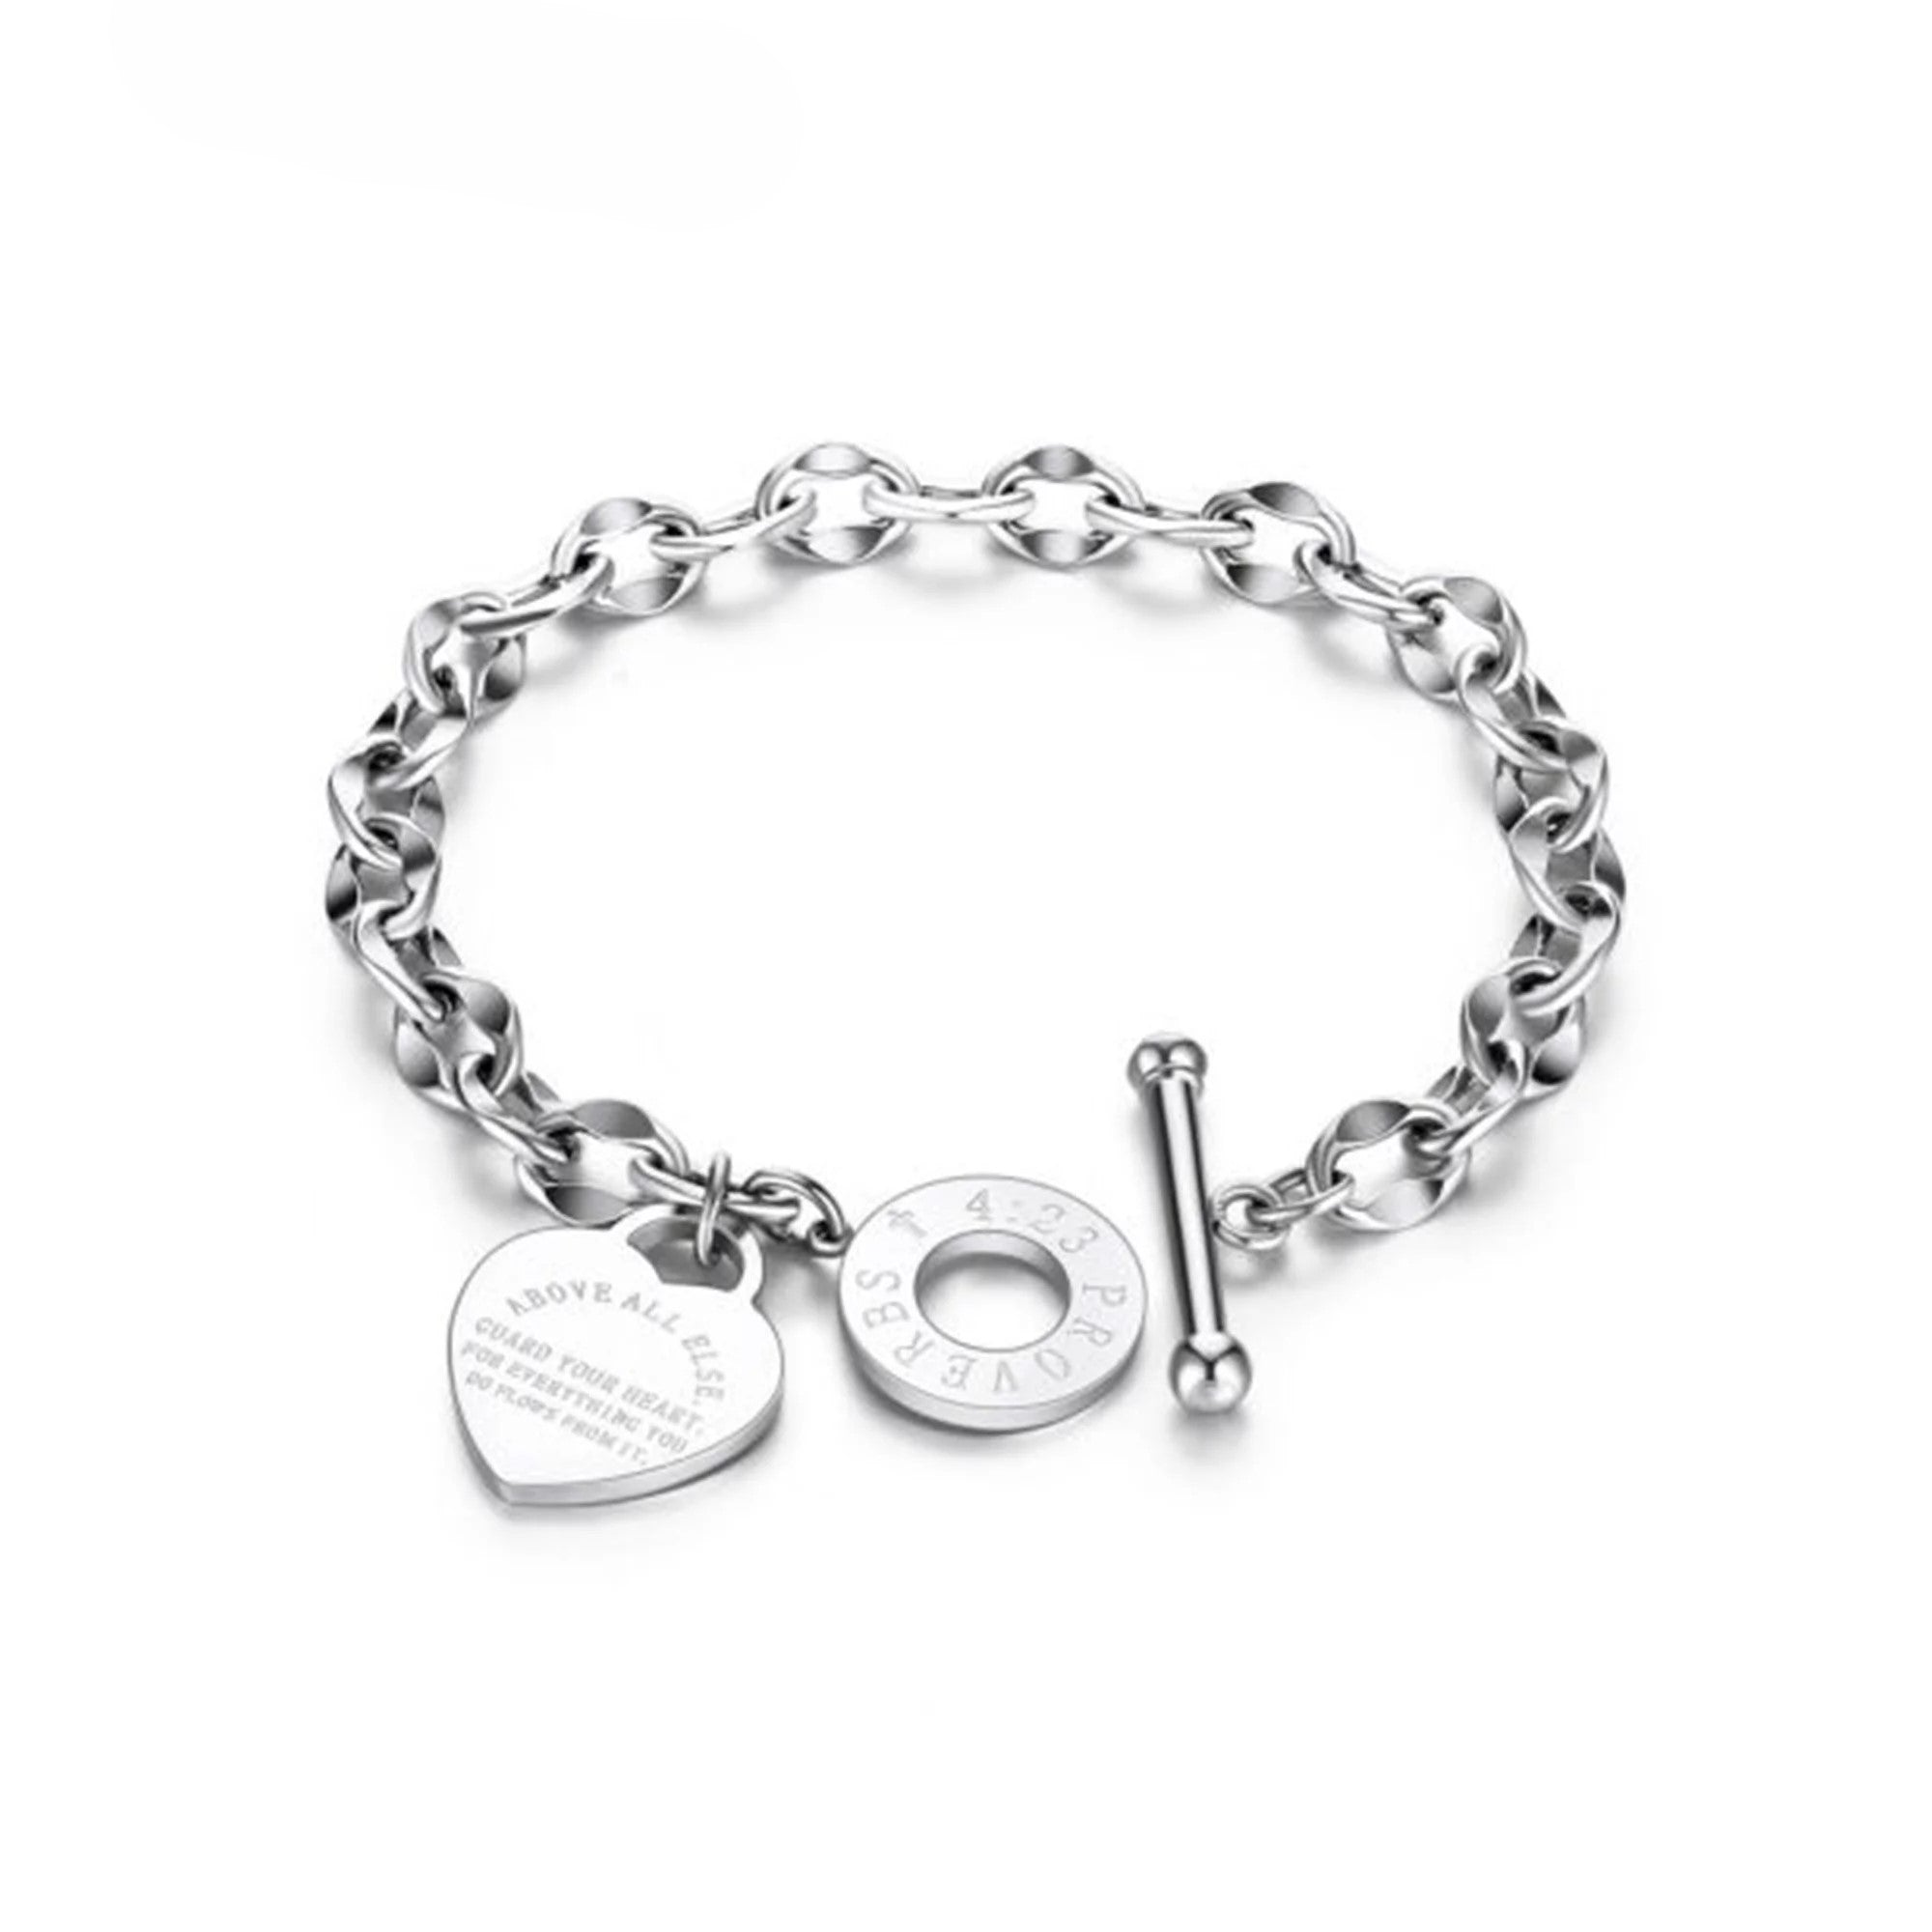 Spencer Stainless Steel Love Heart Charm Bracelet Link Chain Bangle Gift for Women Girl (Silver)